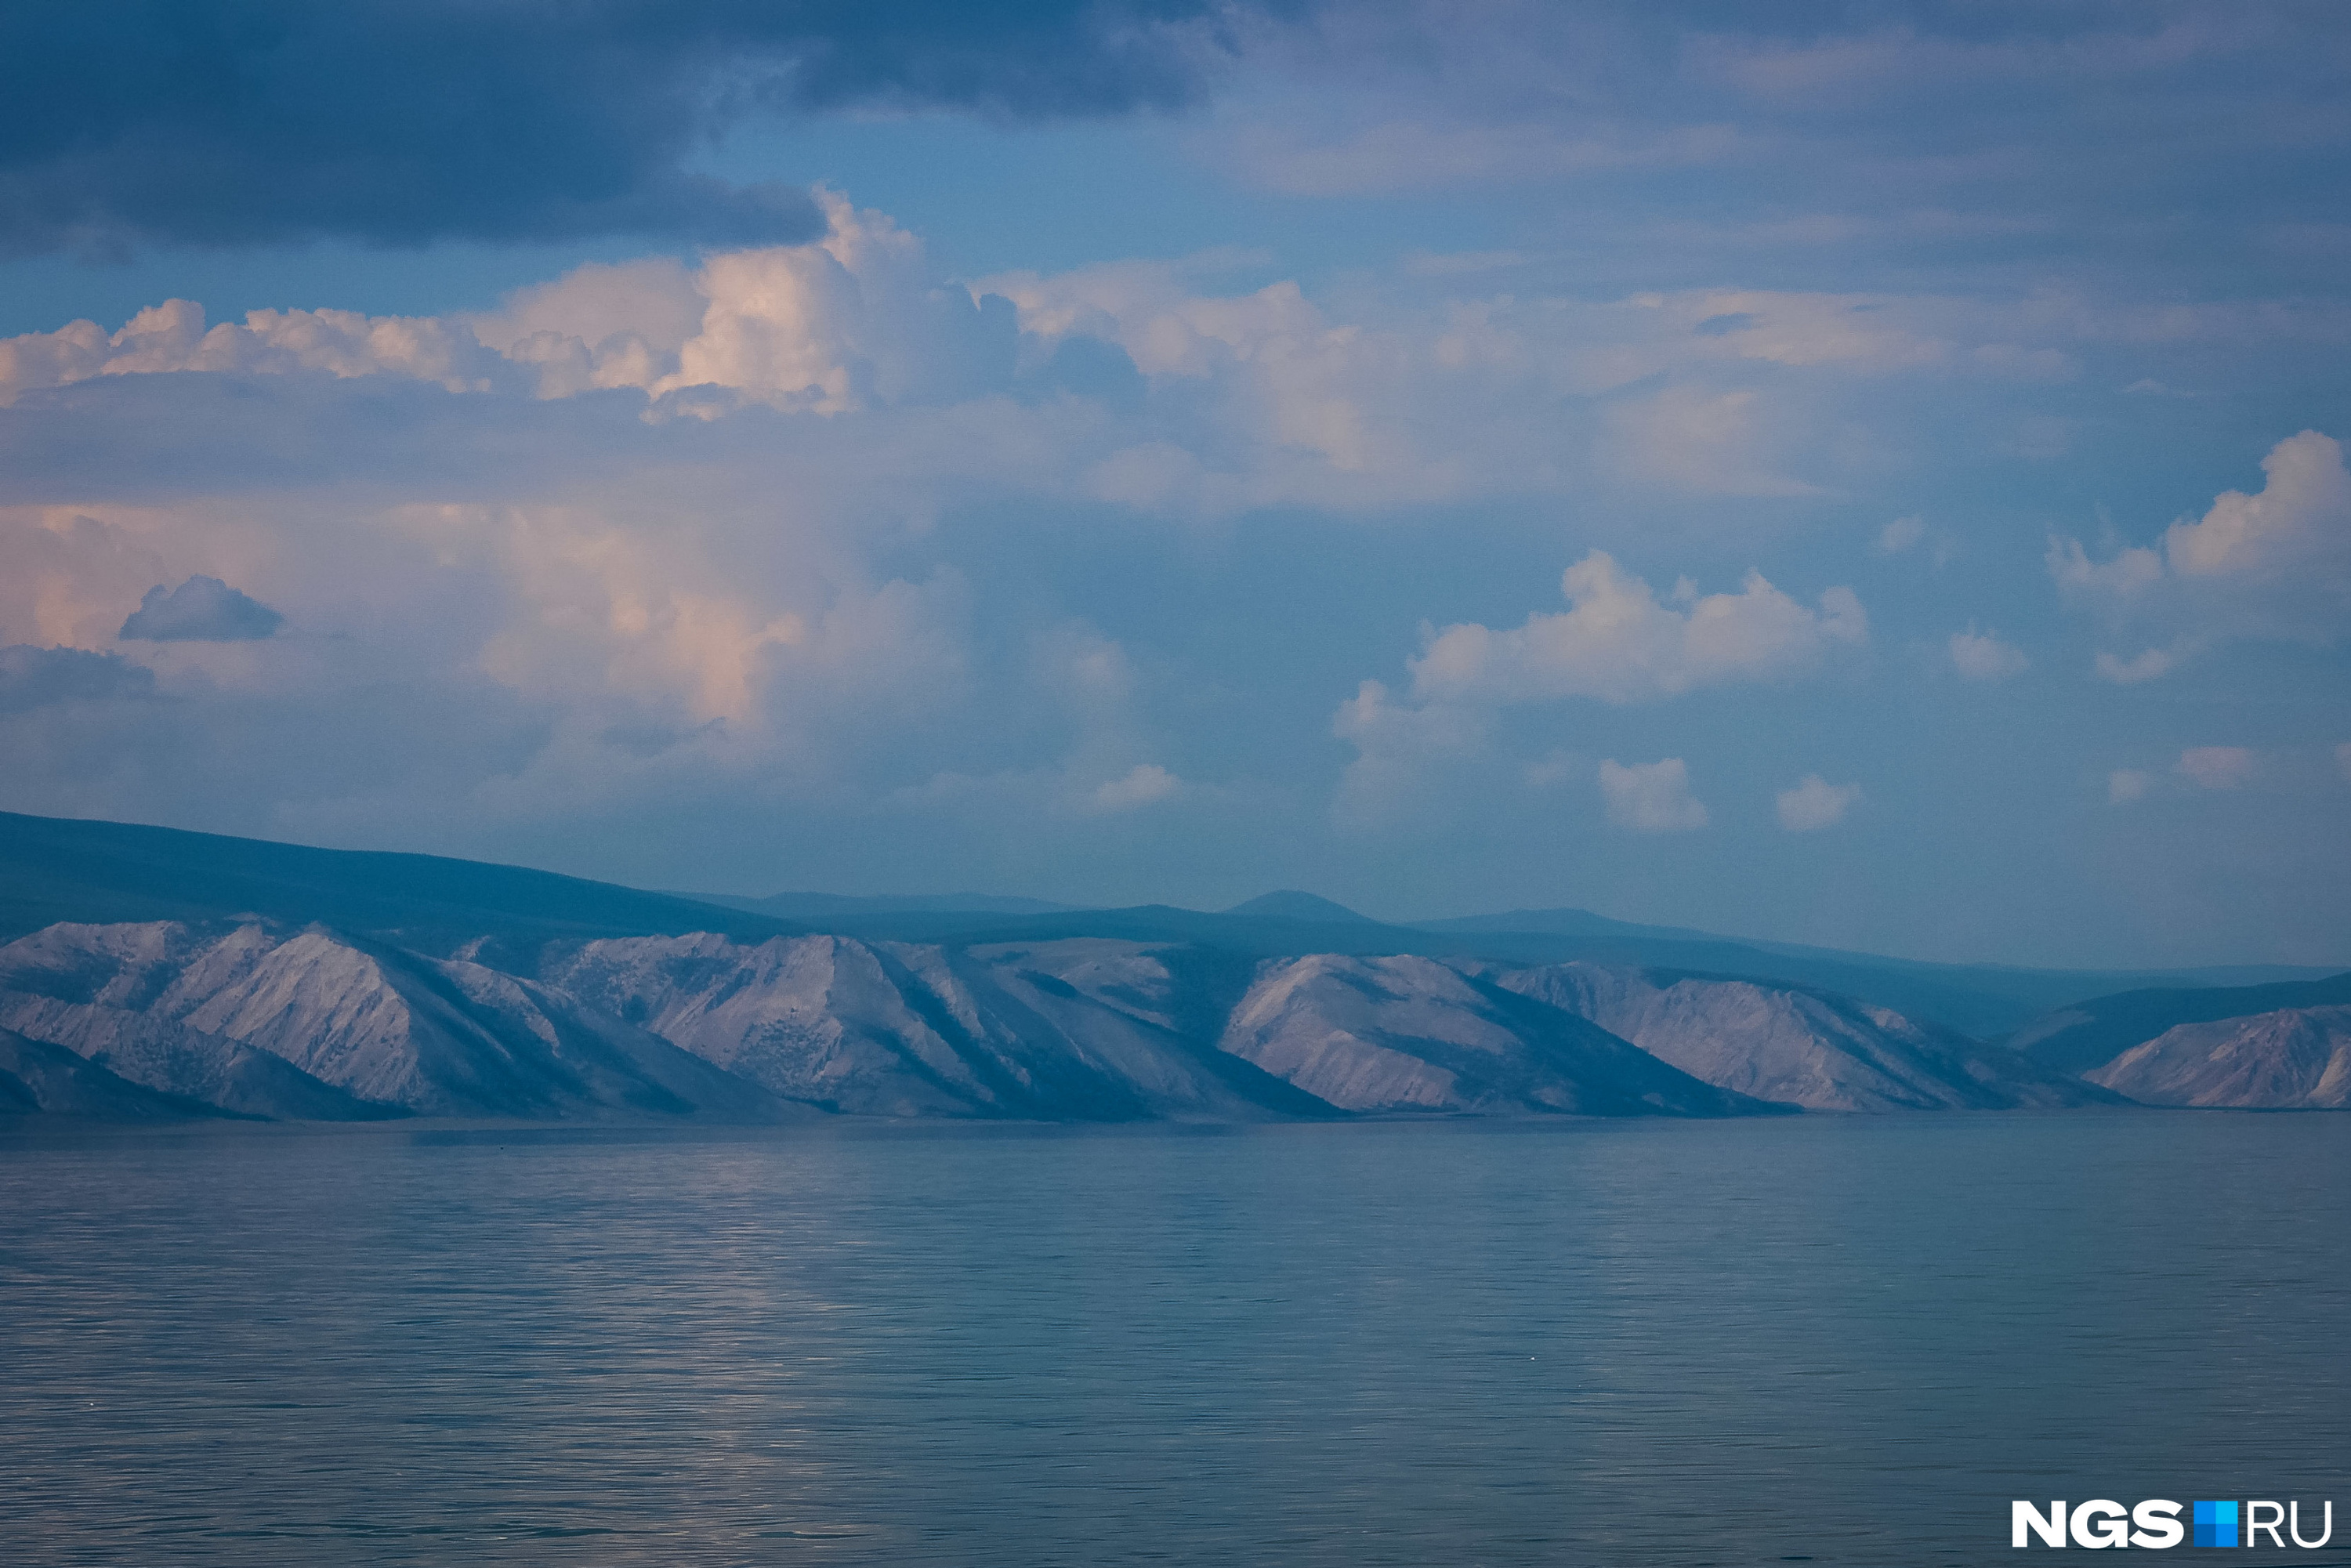 Малое море — пролив, где можно искупаться в Байкале. Вода там прогревается до вполне терпимых температур